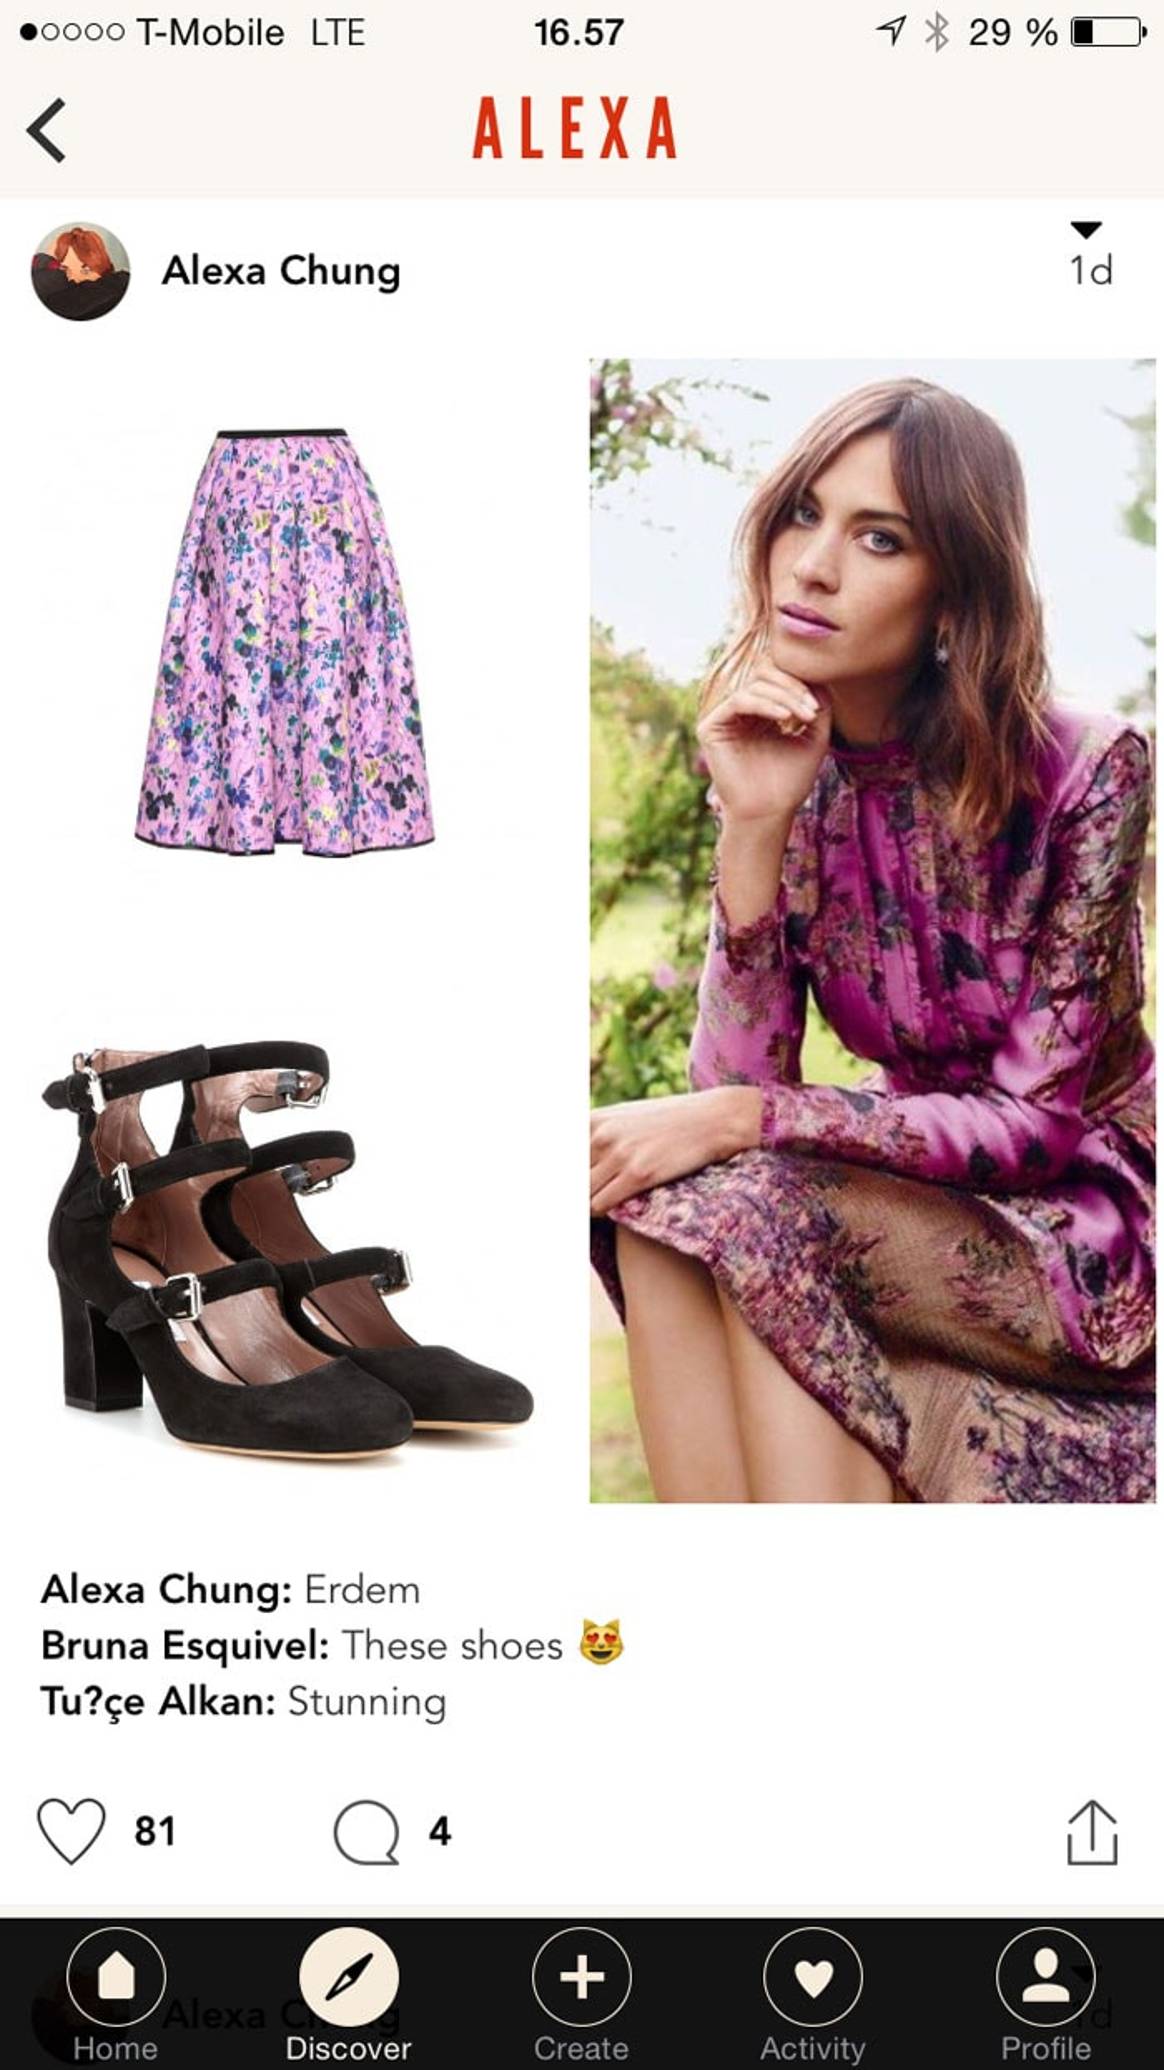 Alexa Chung launches fashion app